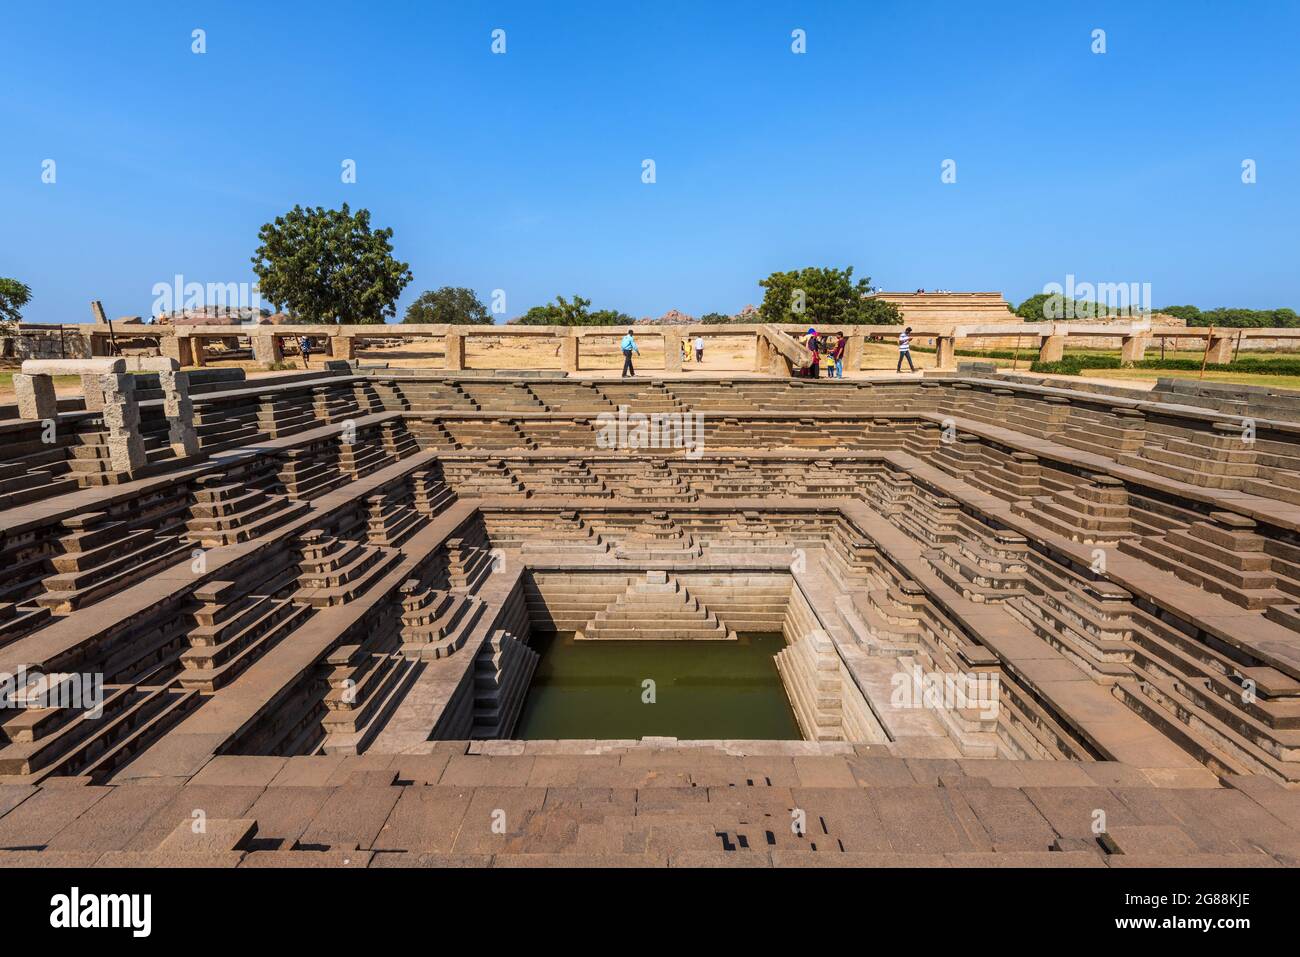 Hampi, Karnataka, India - 14 de enero de 2020 : tanque de agua cuadrado simétrico escalonado (estepwell) dentro del recinto real en Hampi. Foto de stock